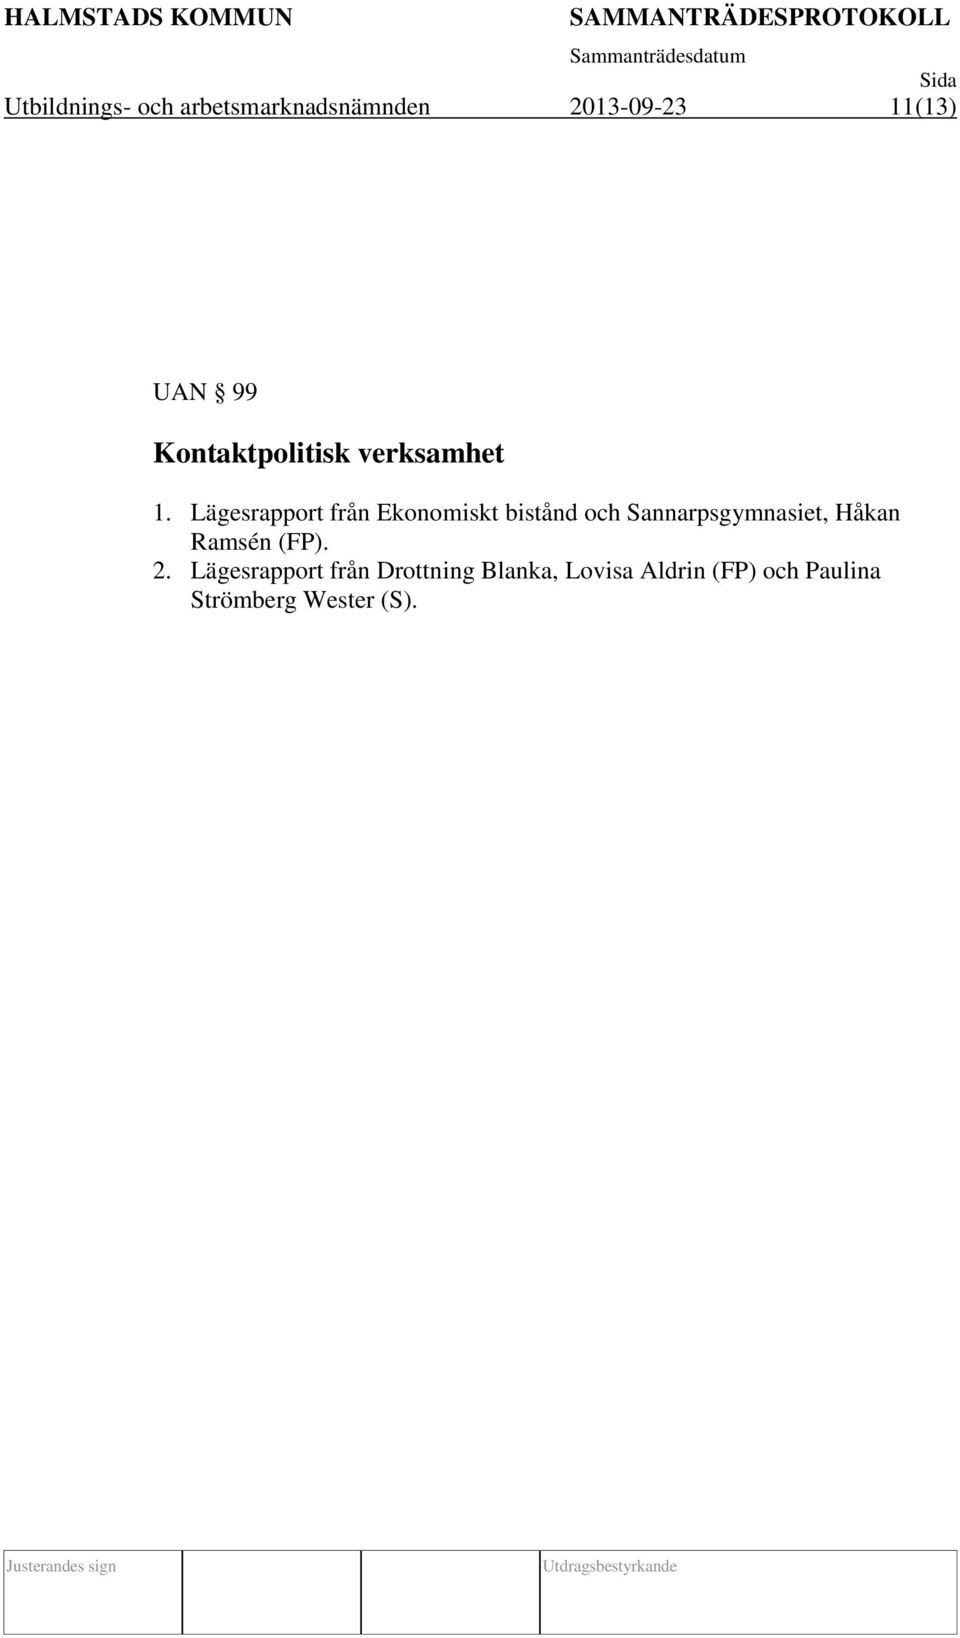 Lägesrapport från Ekonomiskt bistånd och Sannarpsgymnasiet, Håkan